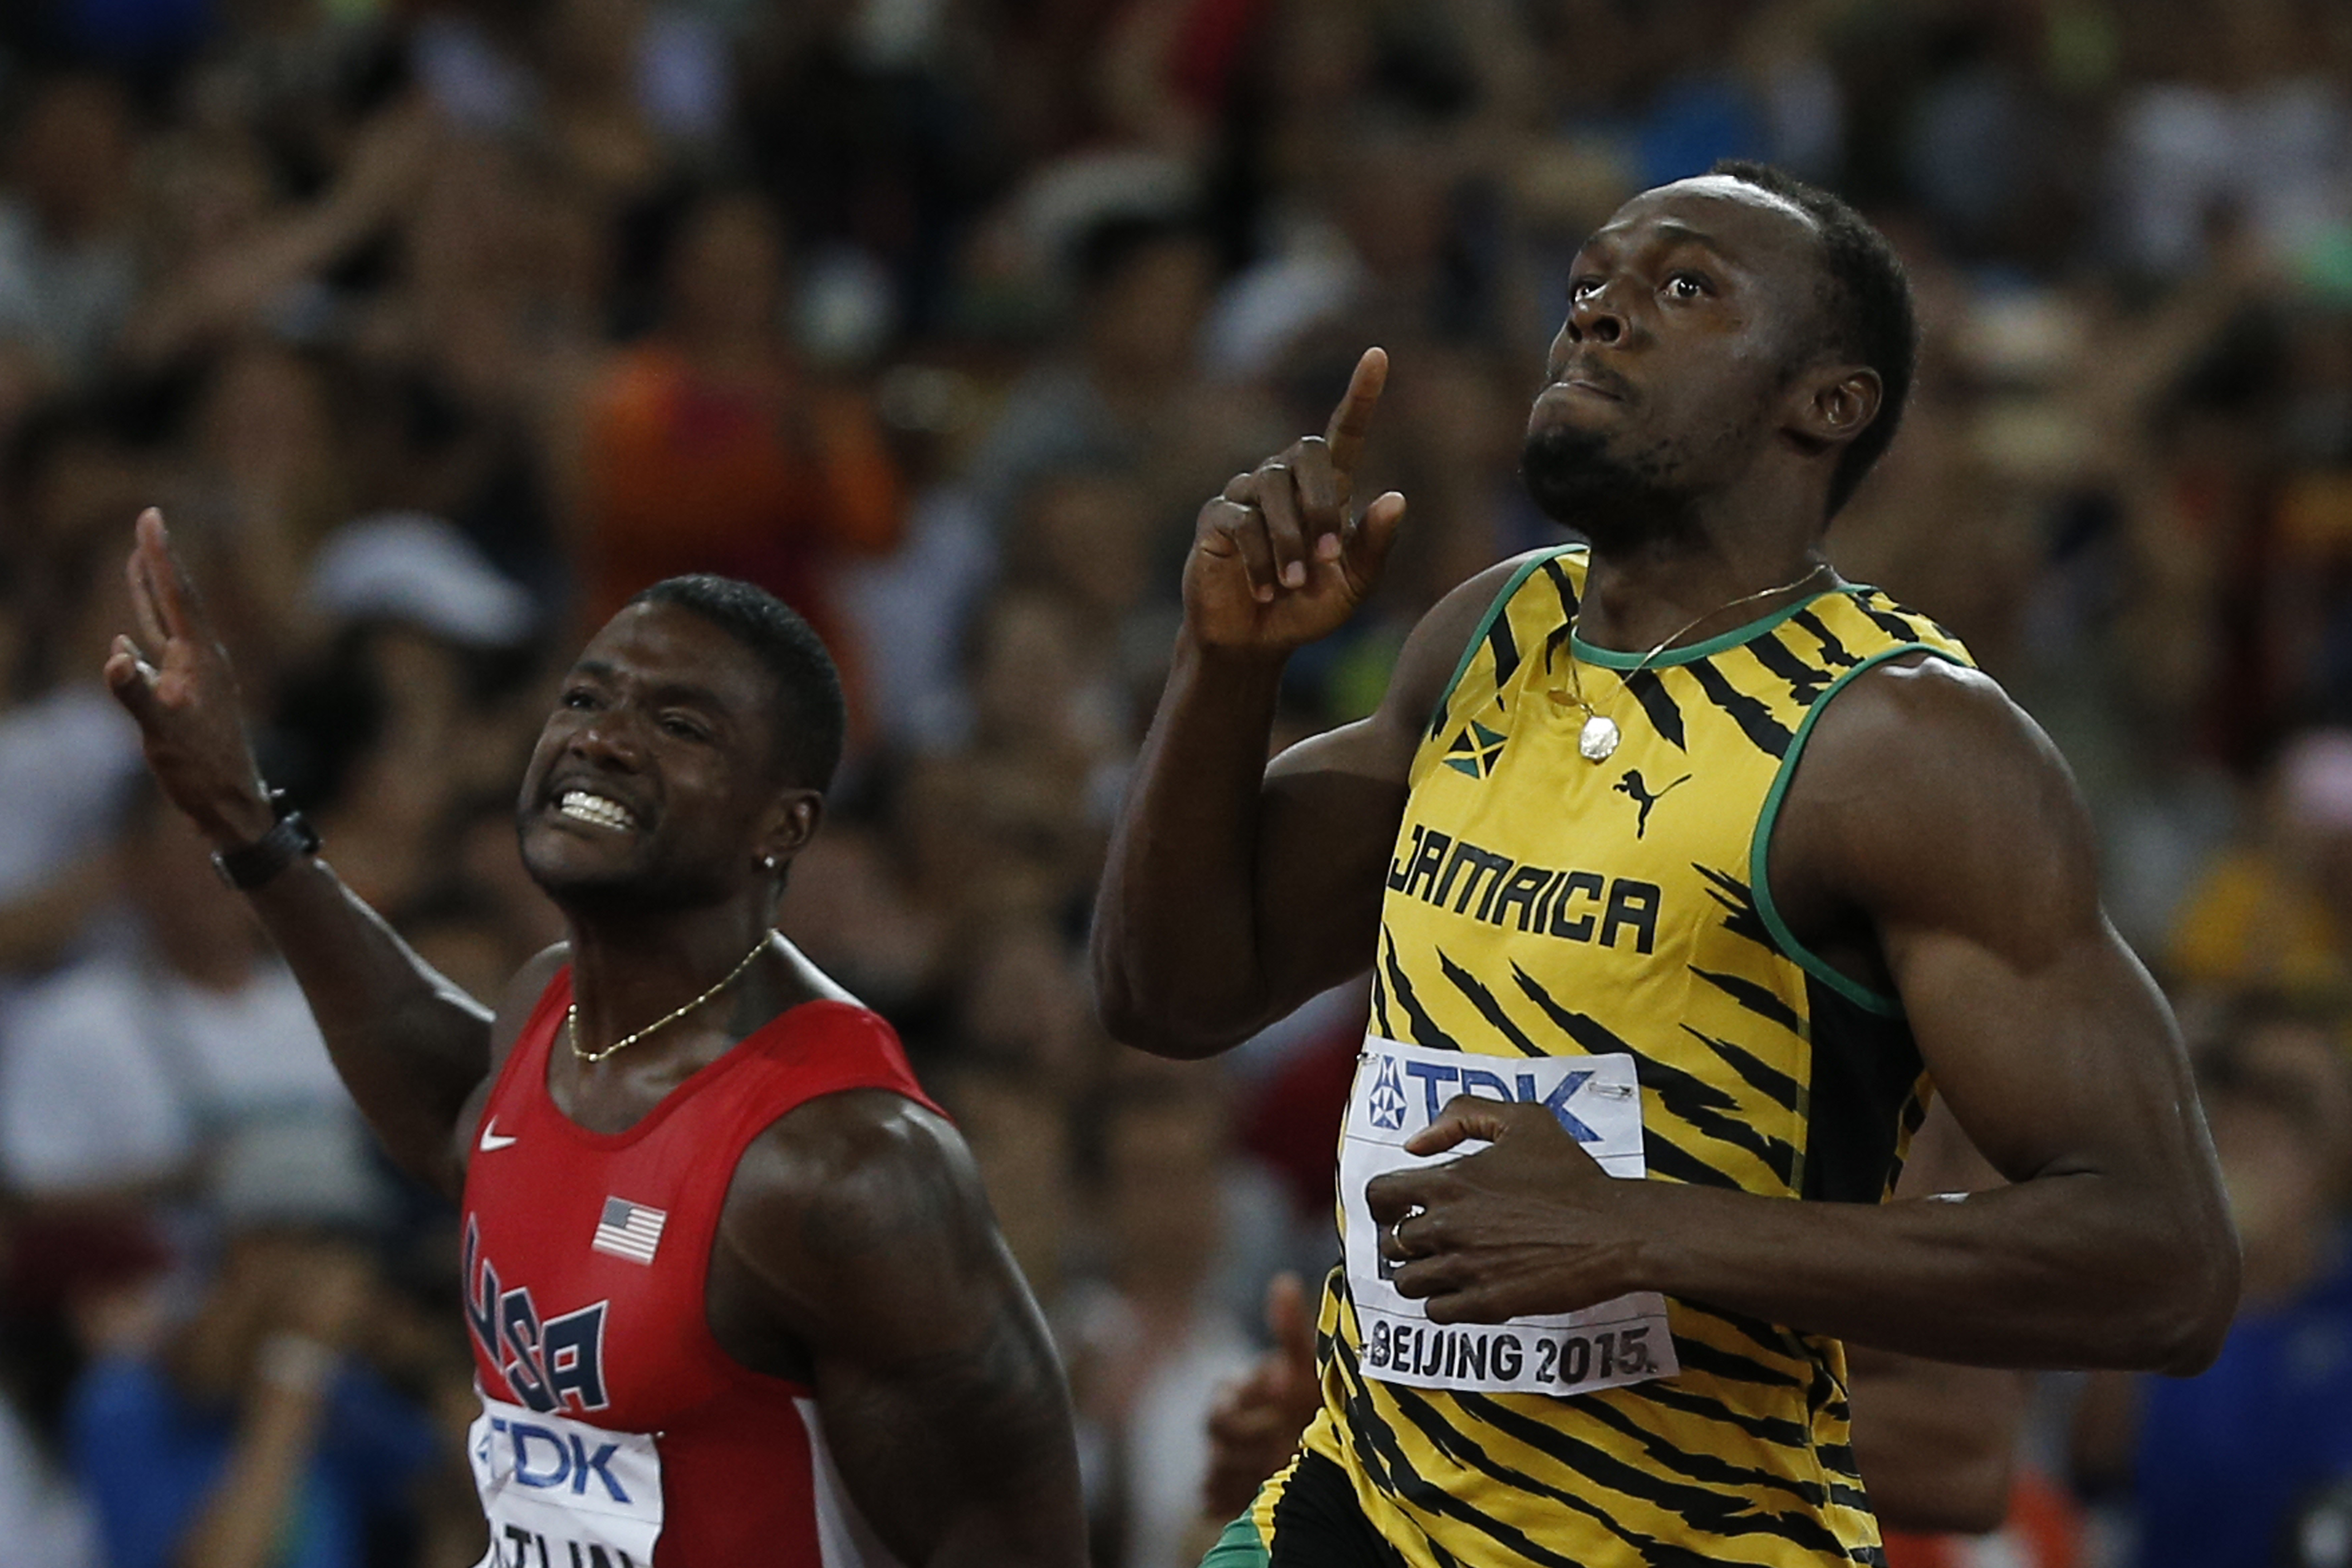 Usain Bolt vẫn là vua nước rút, nhưng Justin Gatlin (trái) đã thu ngắn được khoảng cách -citizen.co.za